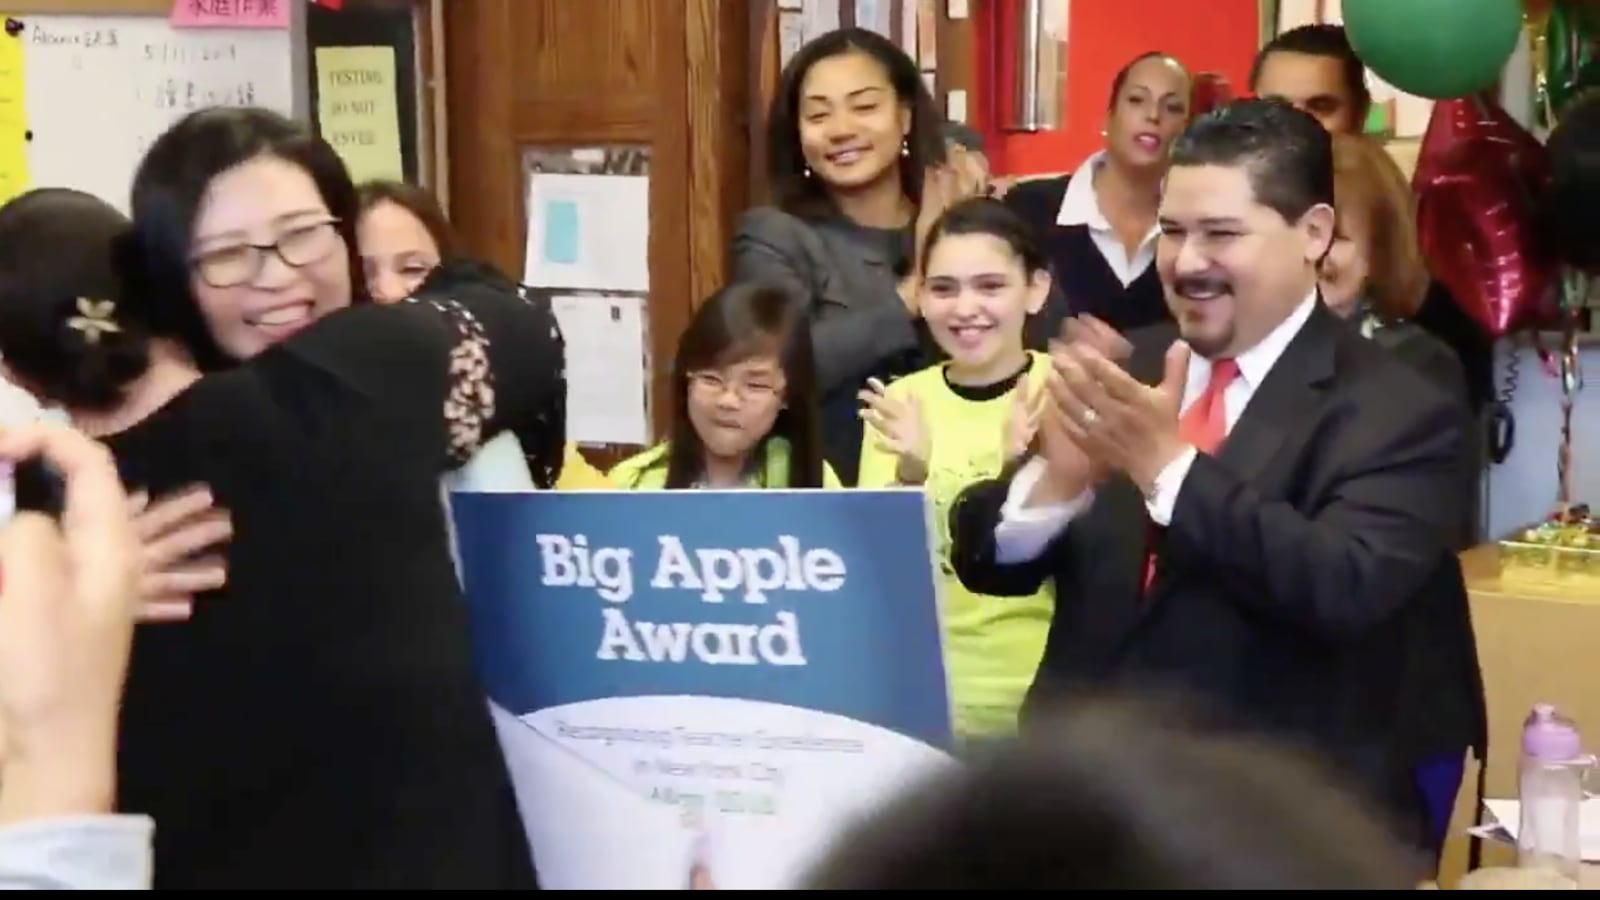 Schools Chancellor Richard Carranza presents a Big Apple Award.